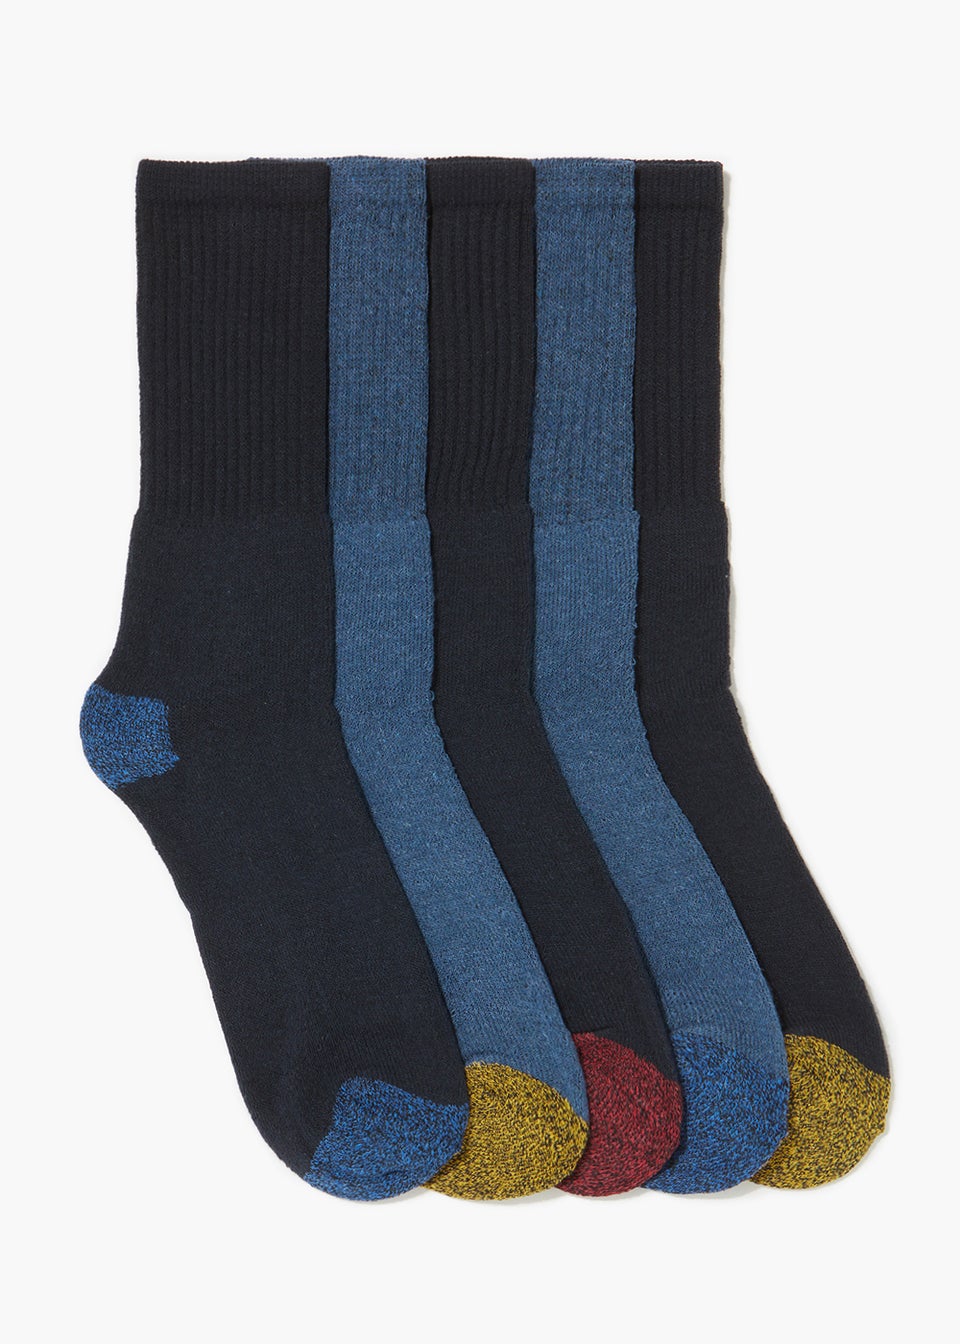 5 Pack Blue Work Socks